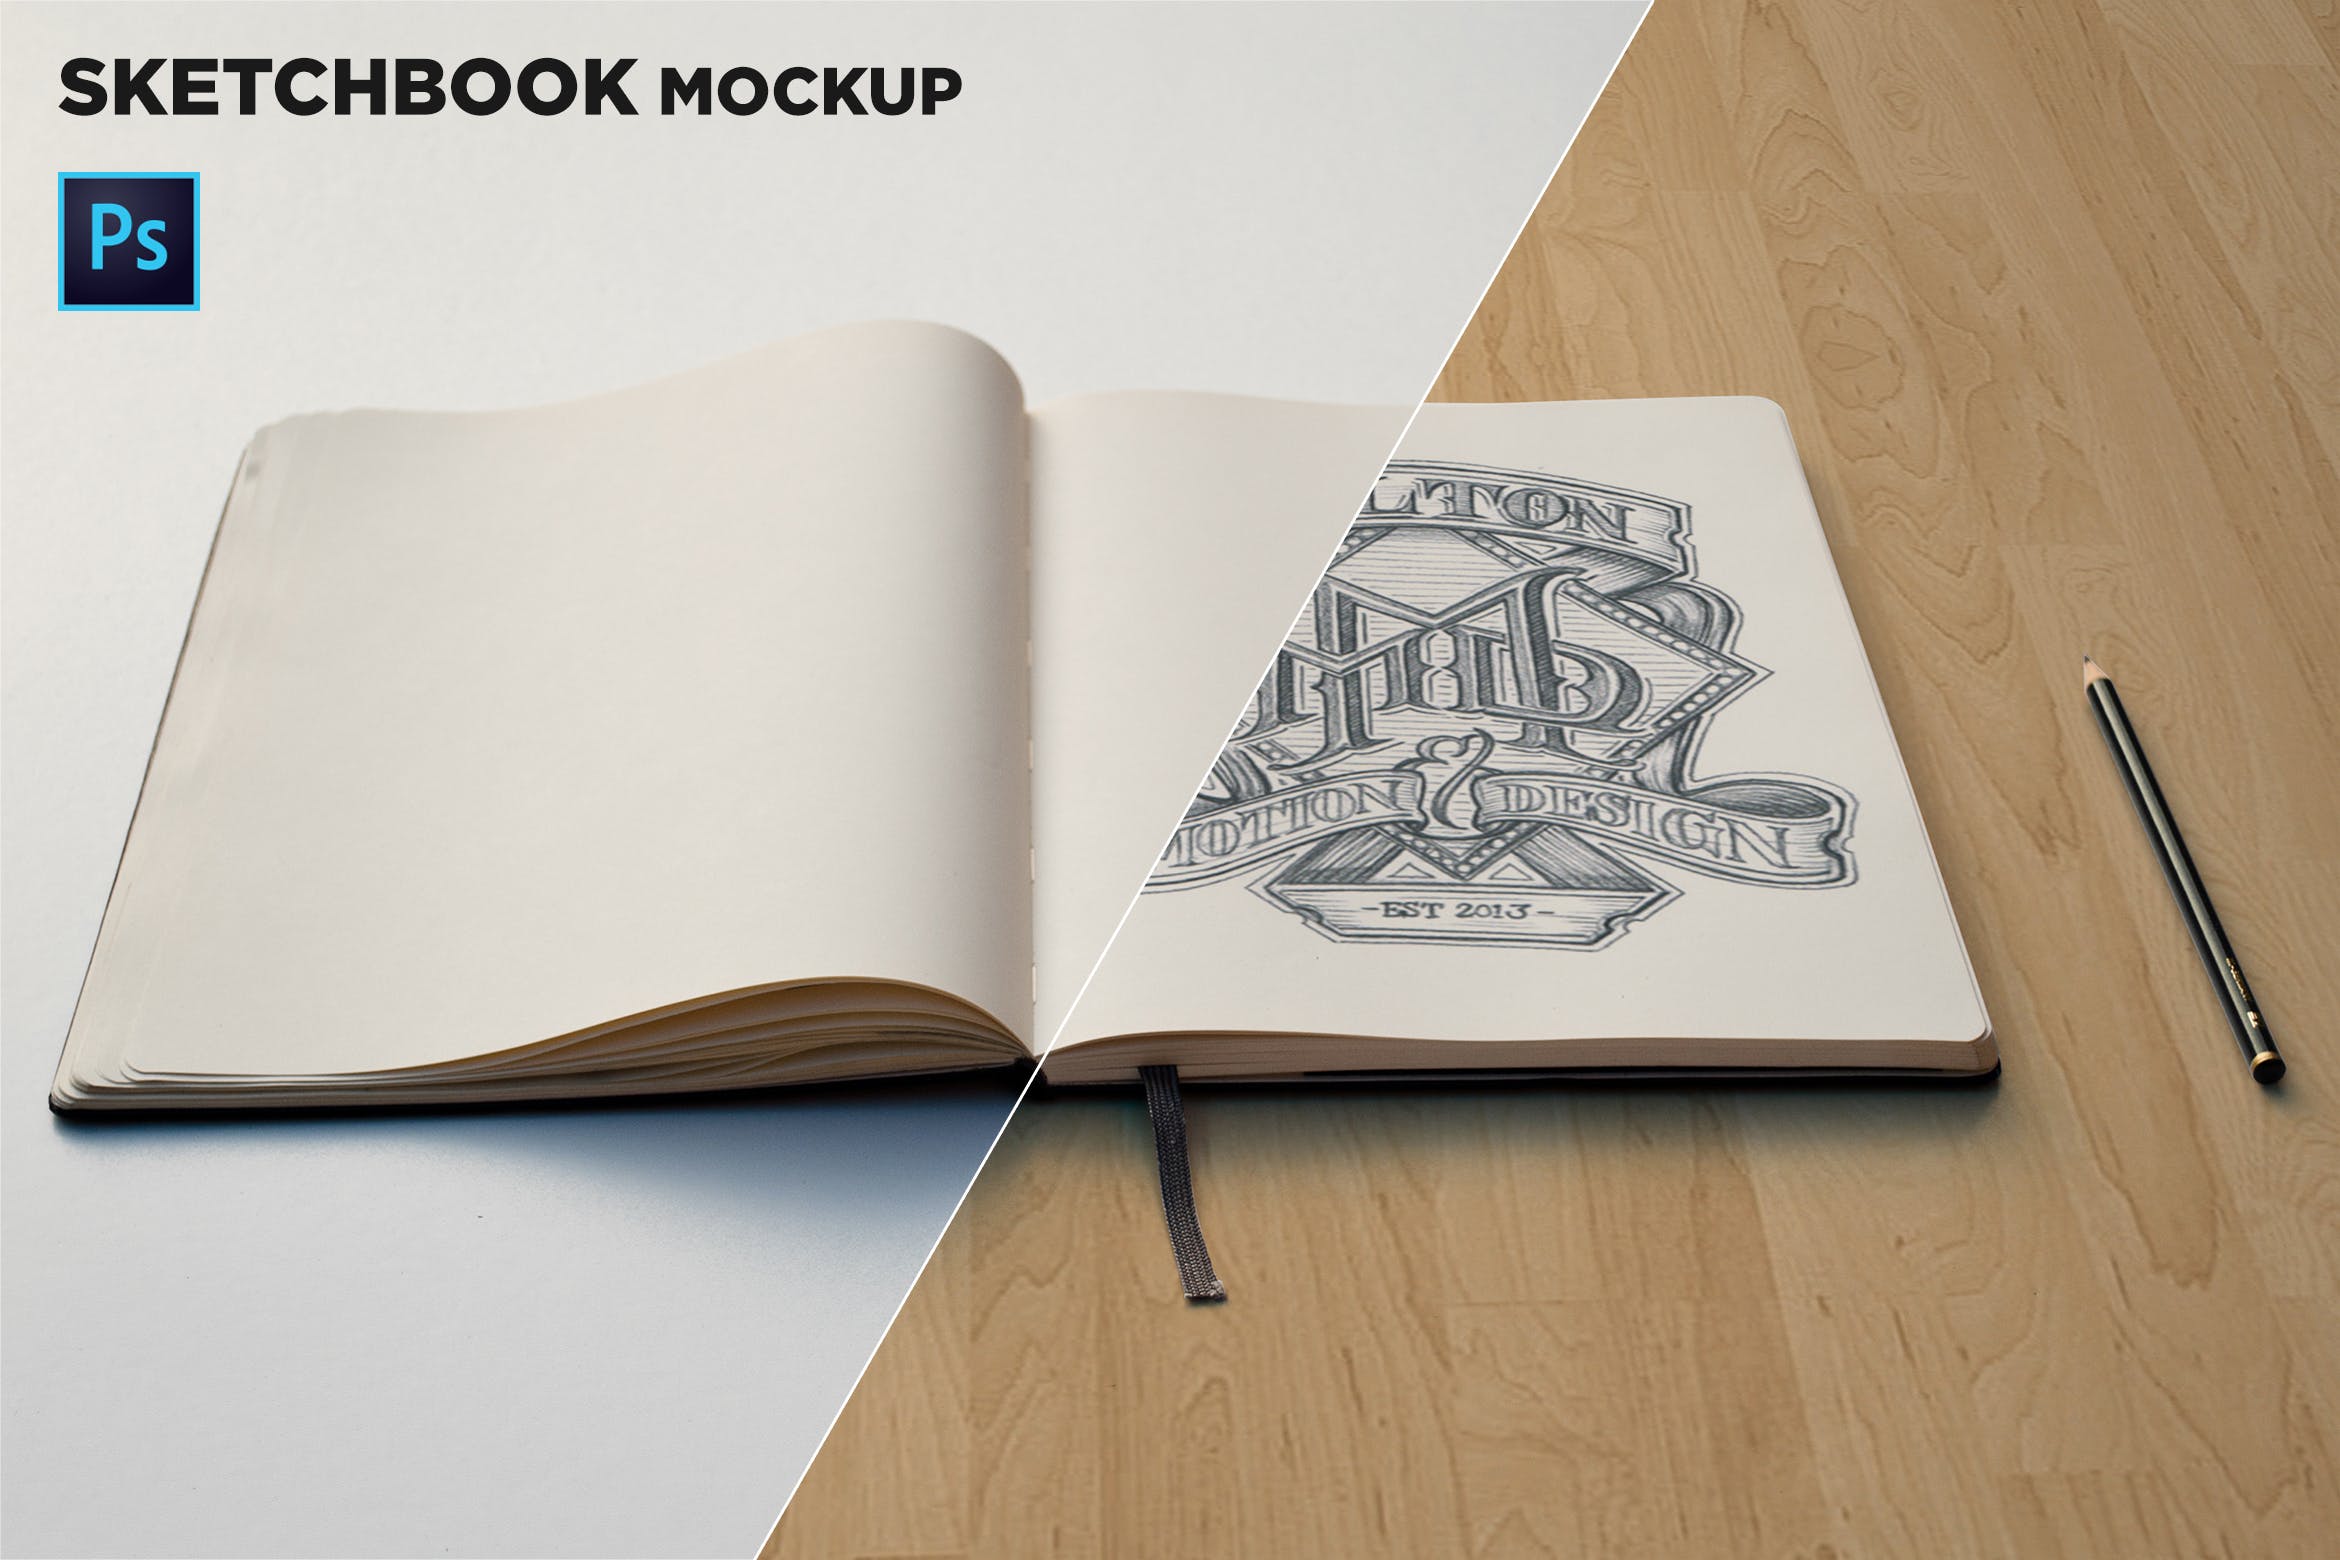 素描本内页设计/艺术作品展示前视图样机第一素材精选 Sketchbook Mockup Front View插图